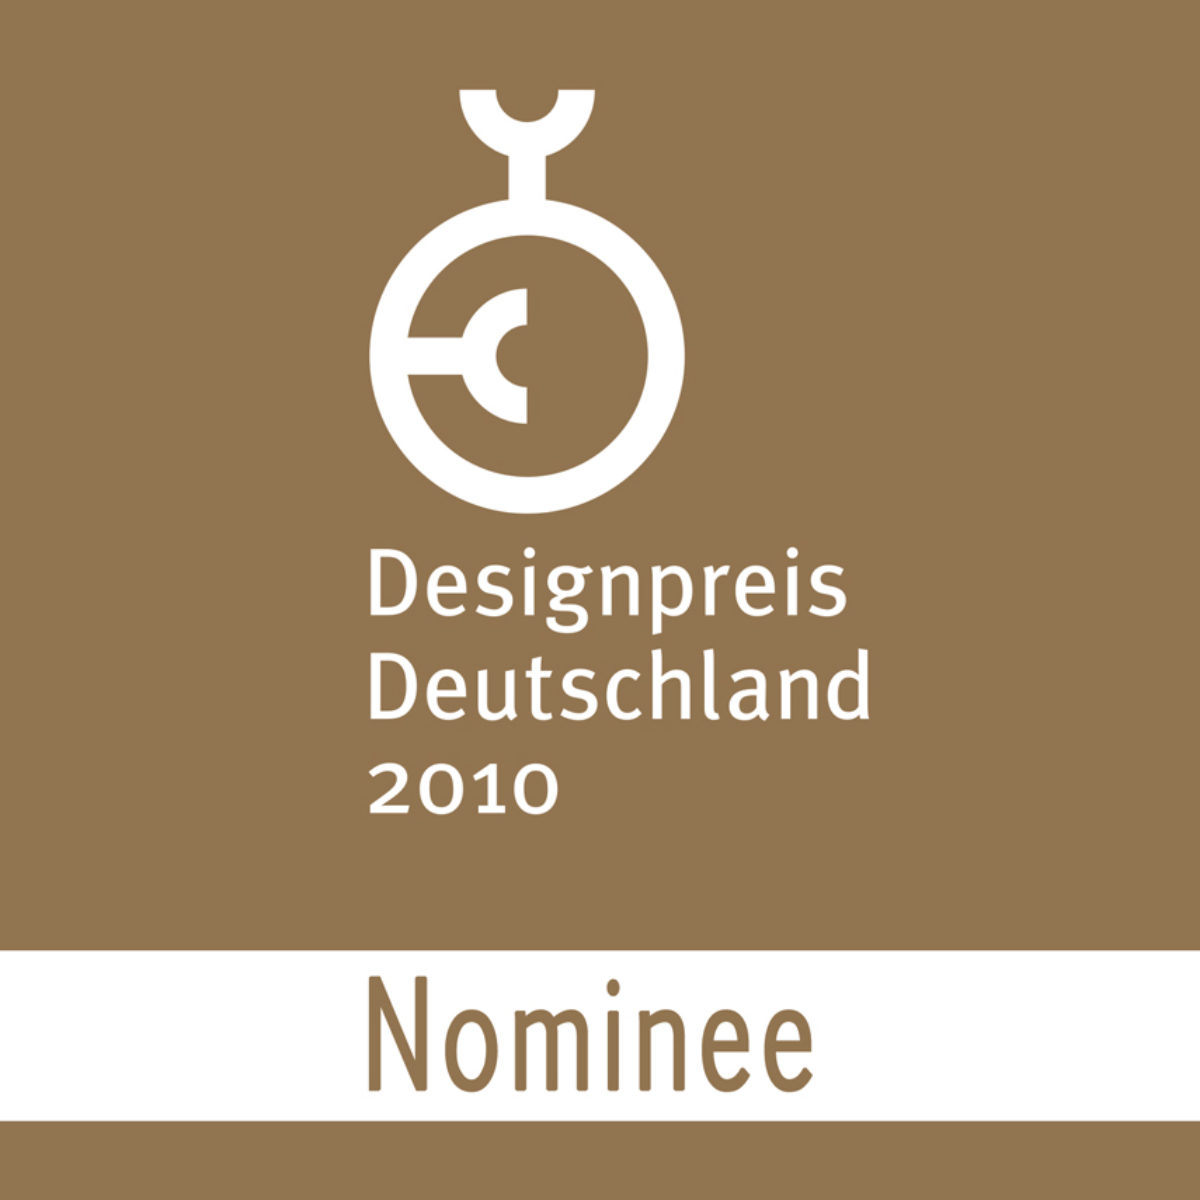 Designpreis Deutschland nominee logo